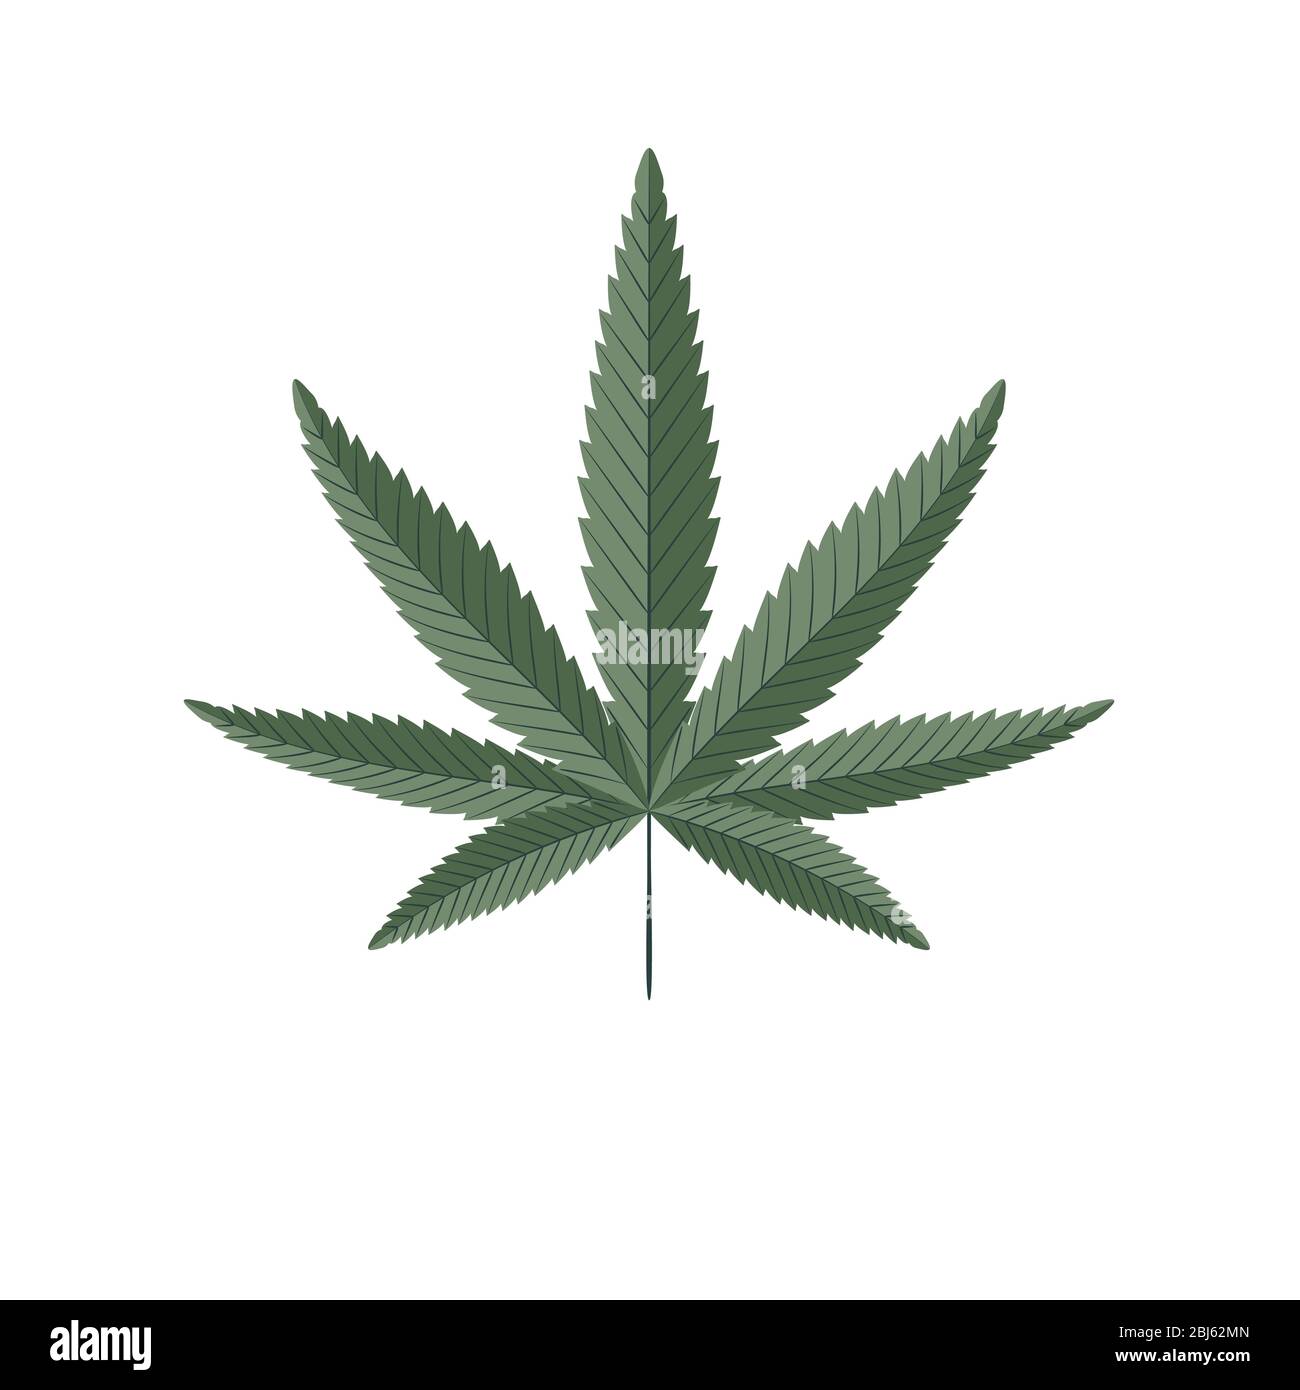 Foglia verde di cannabis isolata su bianco. Illustrazione vettoriale della pianta della canapa. Illustrazione Vettoriale